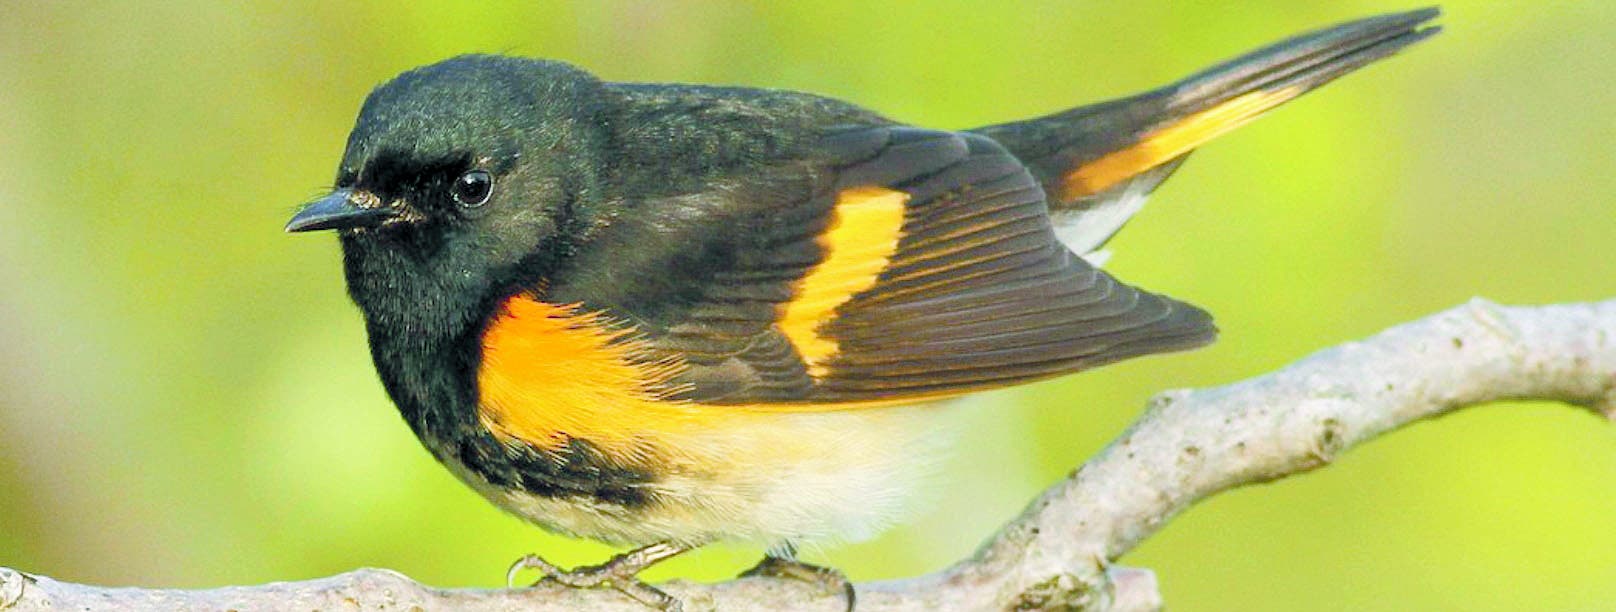 Aves migratorias no escapan a las amenazas por ingesta de plásticos